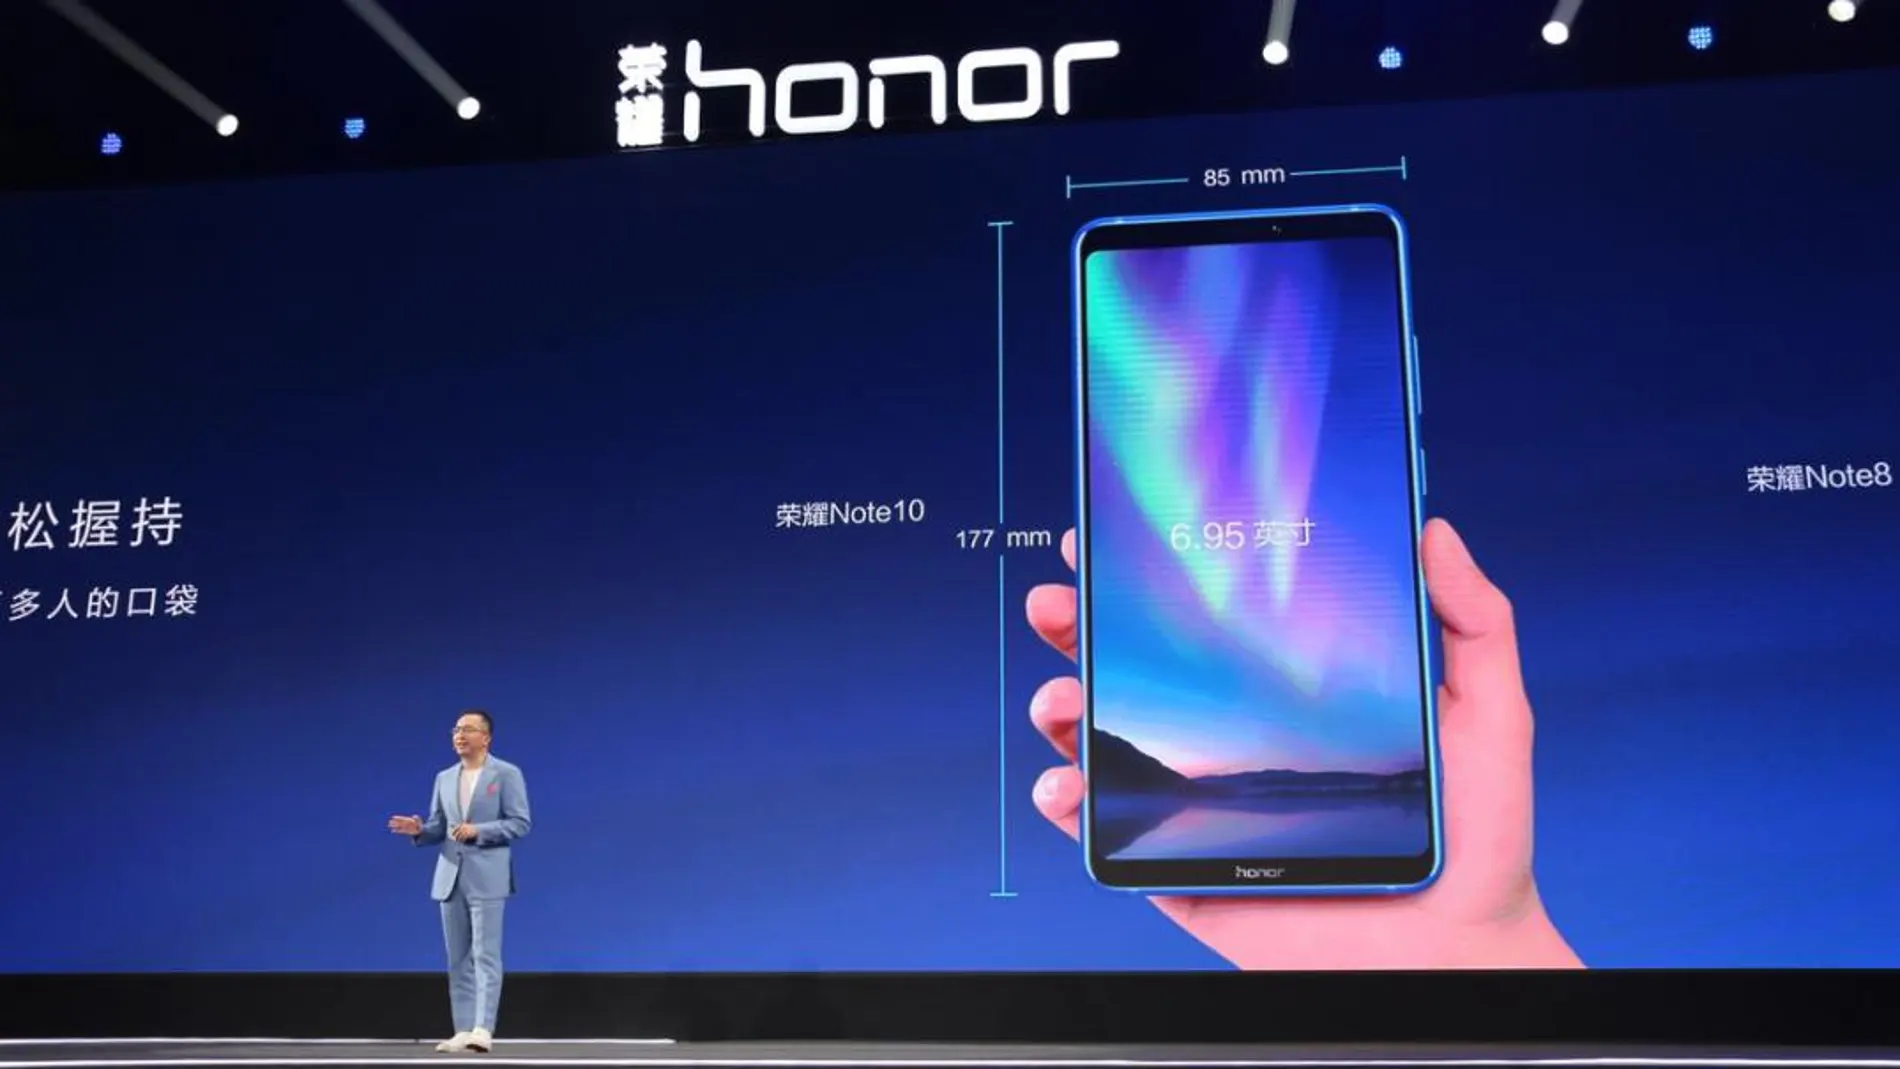 Presentación del Honor Note10